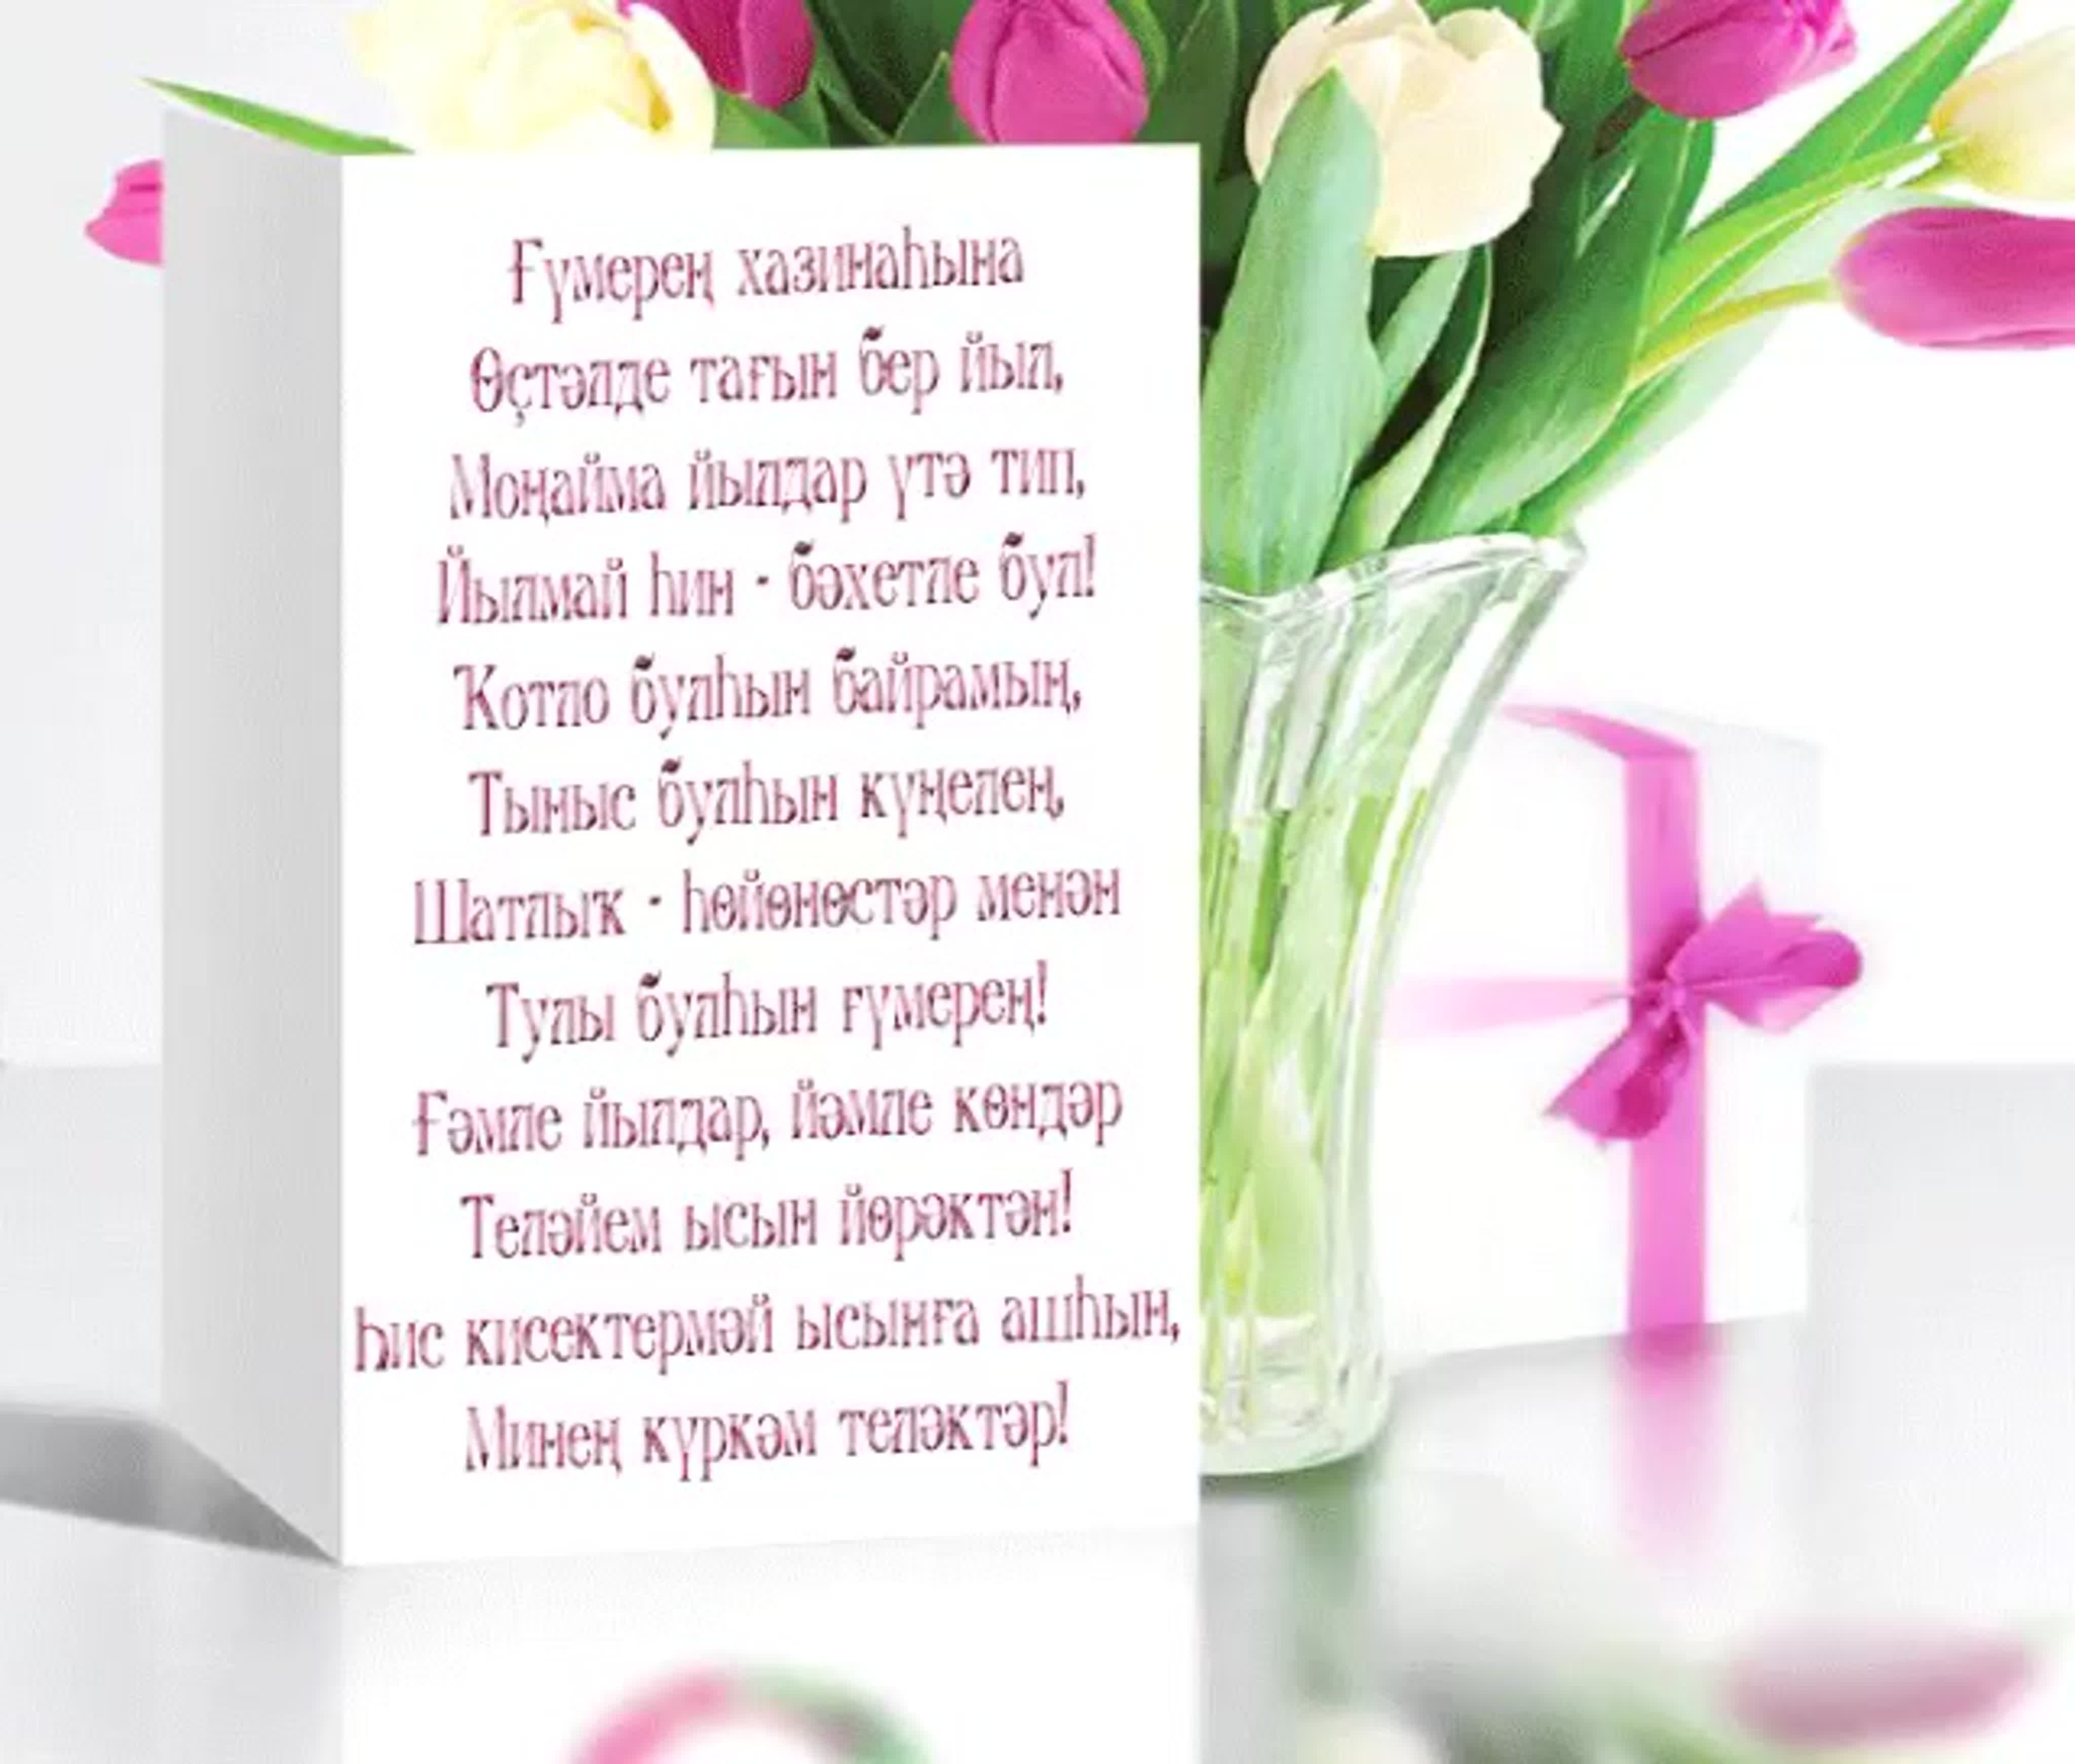 Поздравление на башкирском языке маме. Поздравления с днём рождения на башкирском. Поздравление с юбилеем на башкирском языке. Поздравления с днём рождения на башкирском языке. Поздравления с днём на башкирском языке.